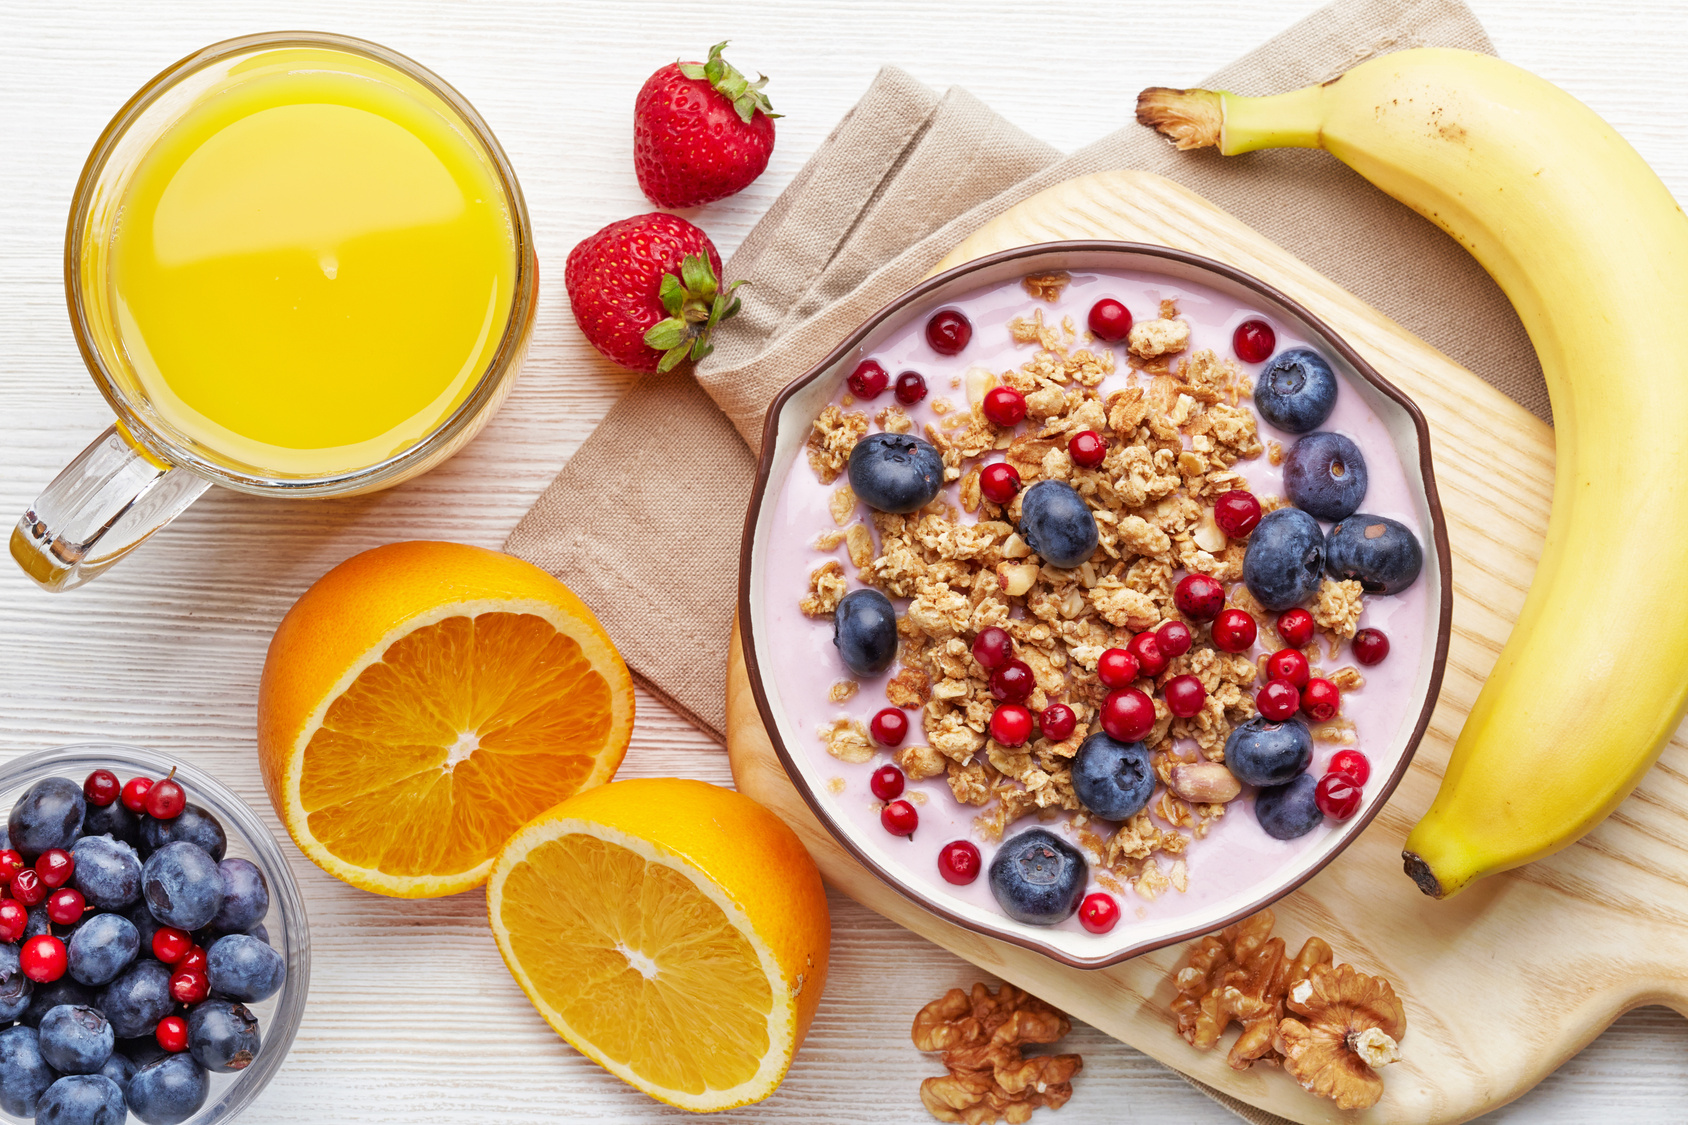 Easy And Healthy Breakfast Ideas | Brighton Escrow, Inc.